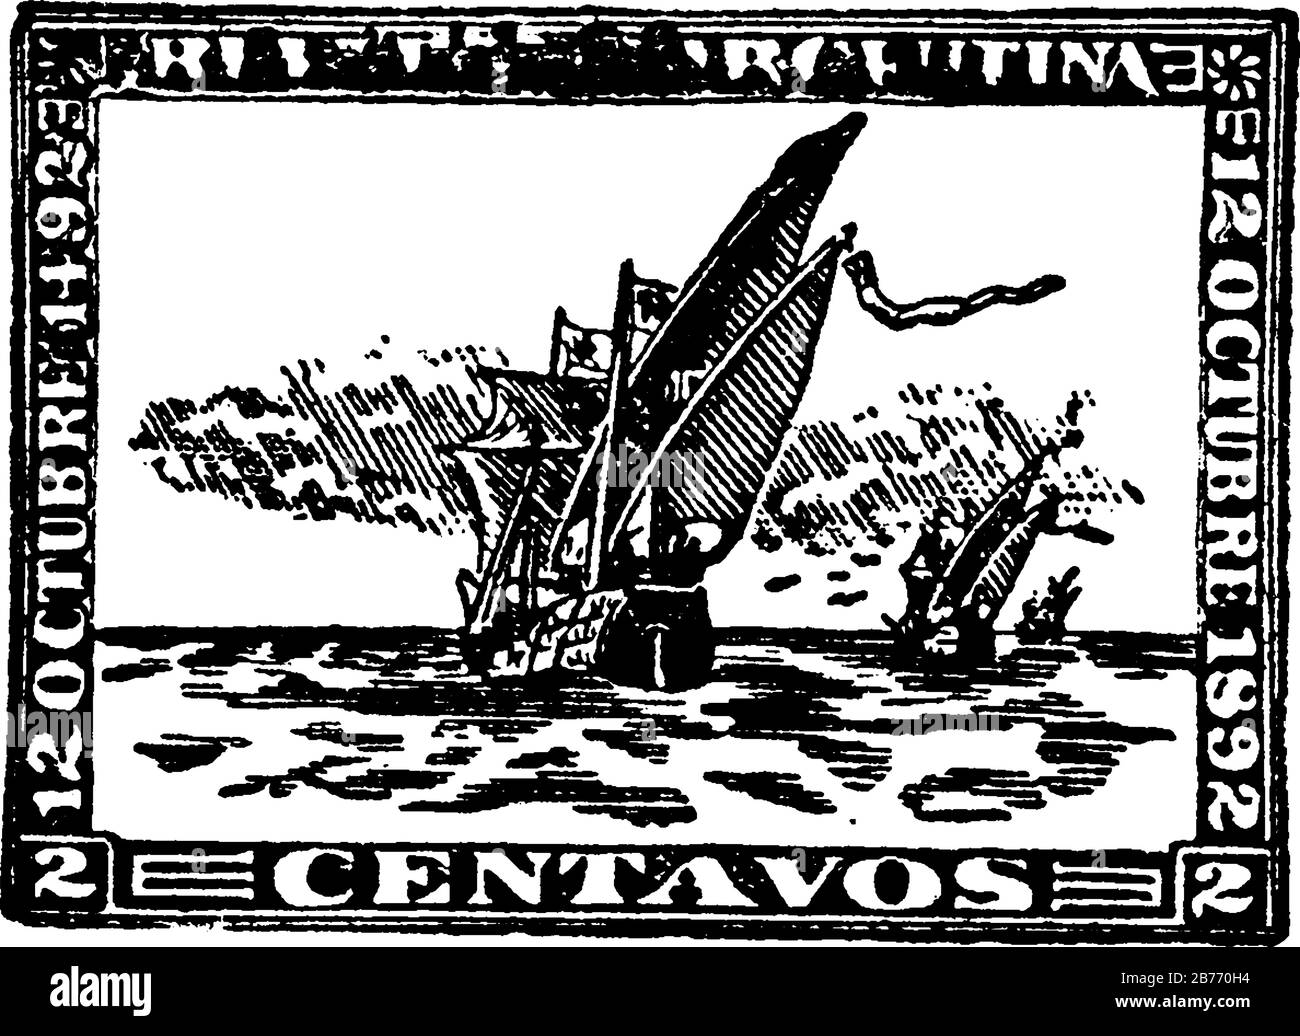 Argentinische Republik hundertjährige Briefmarke (2 Zentavos) von 1892 - 12. Oktober 1892, ein selbstklebendes Papierstück, das feststeckt, um einen zu zahlenden Geldbetrag zu zeigen, Stock Vektor